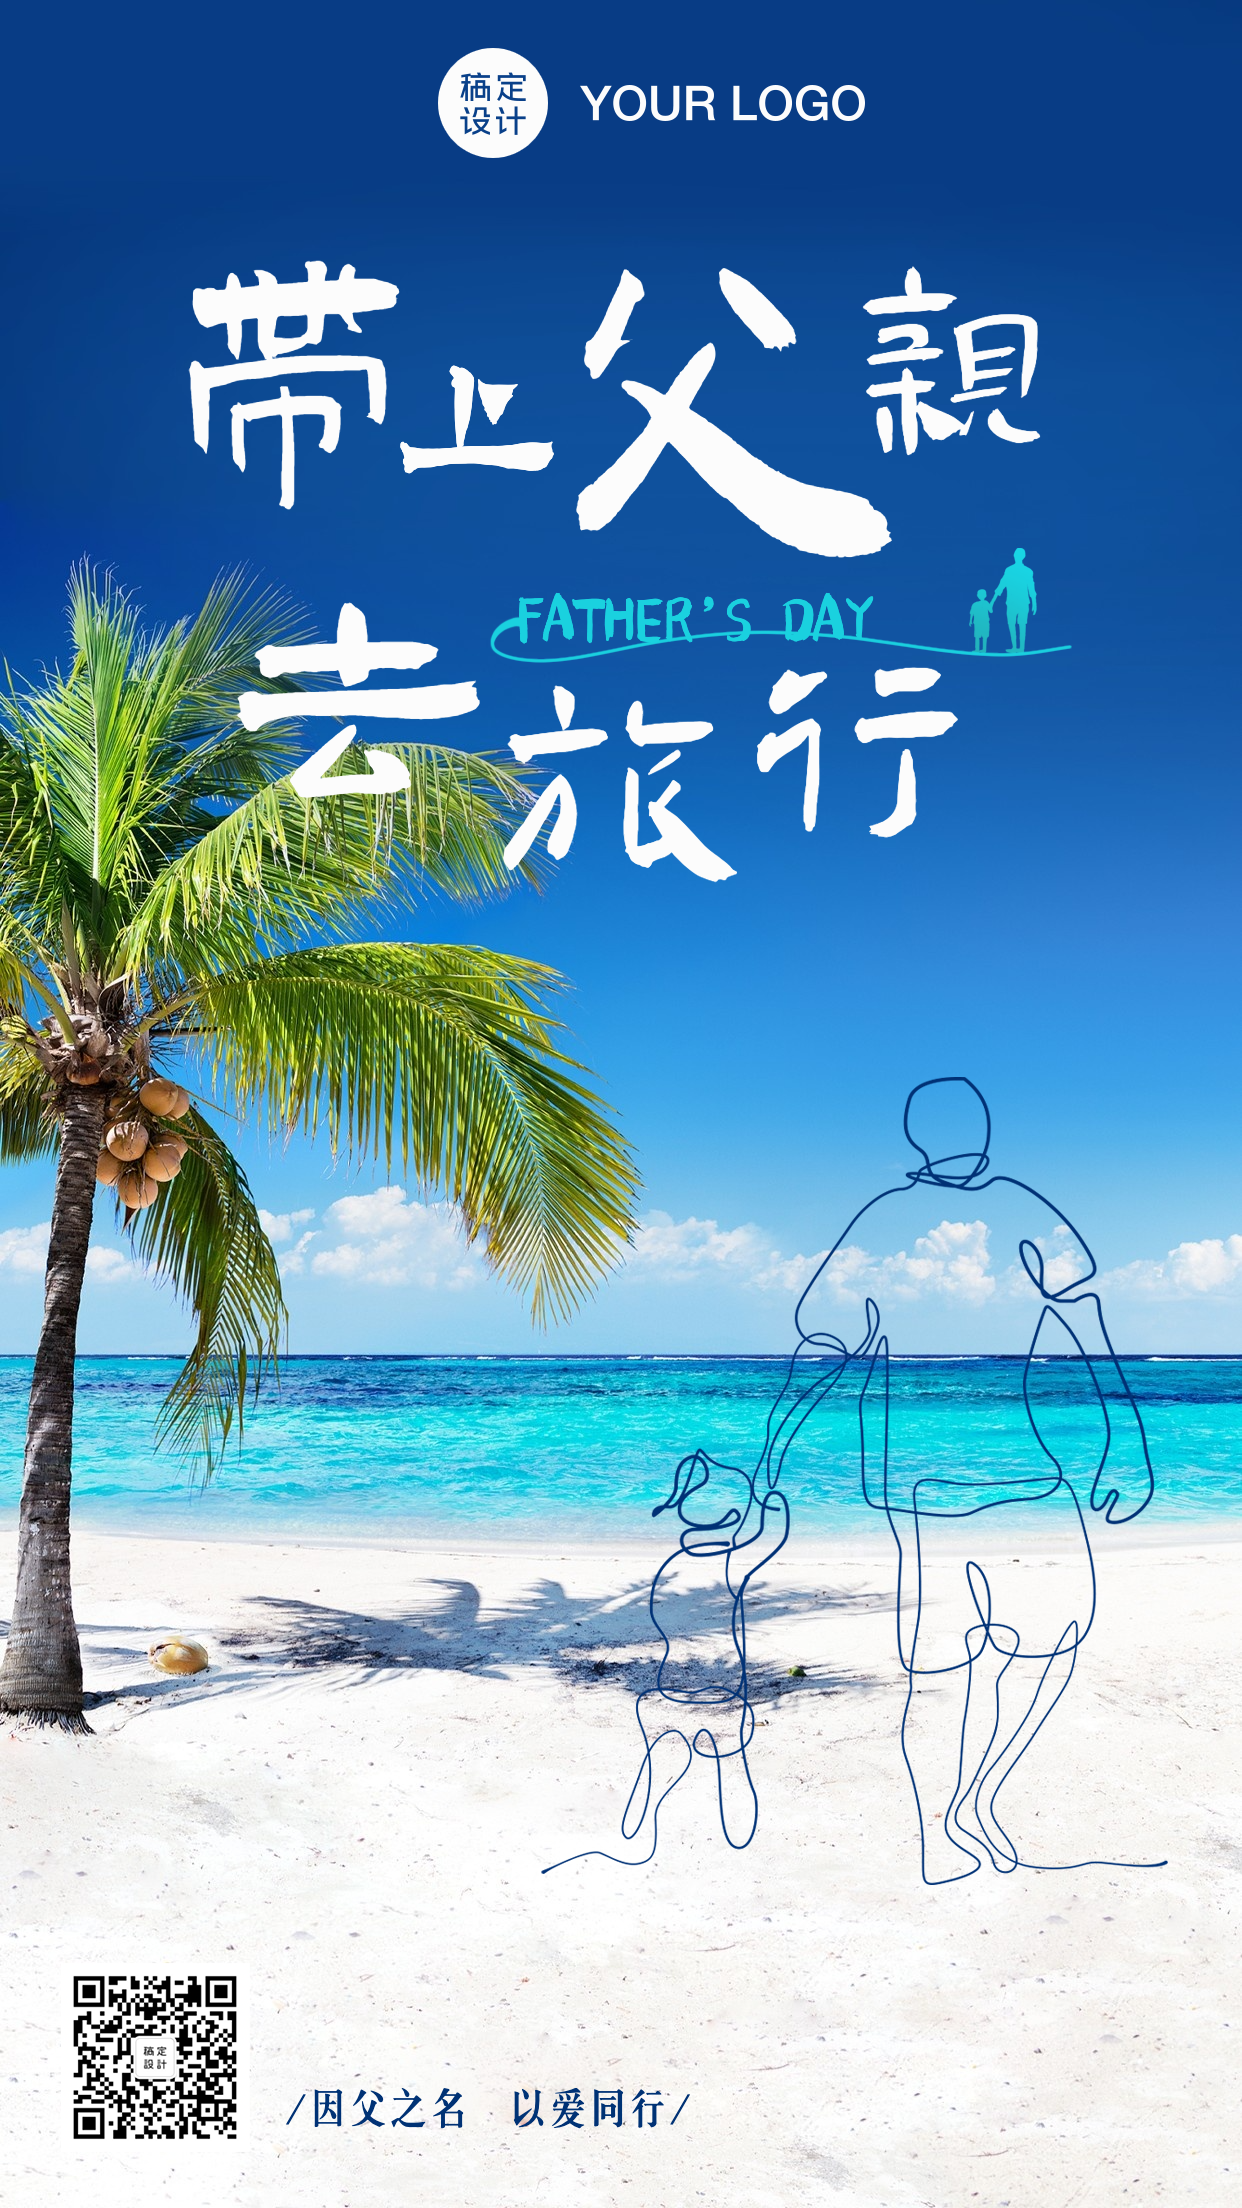 父亲节旅游景点宣传营销唯美海报